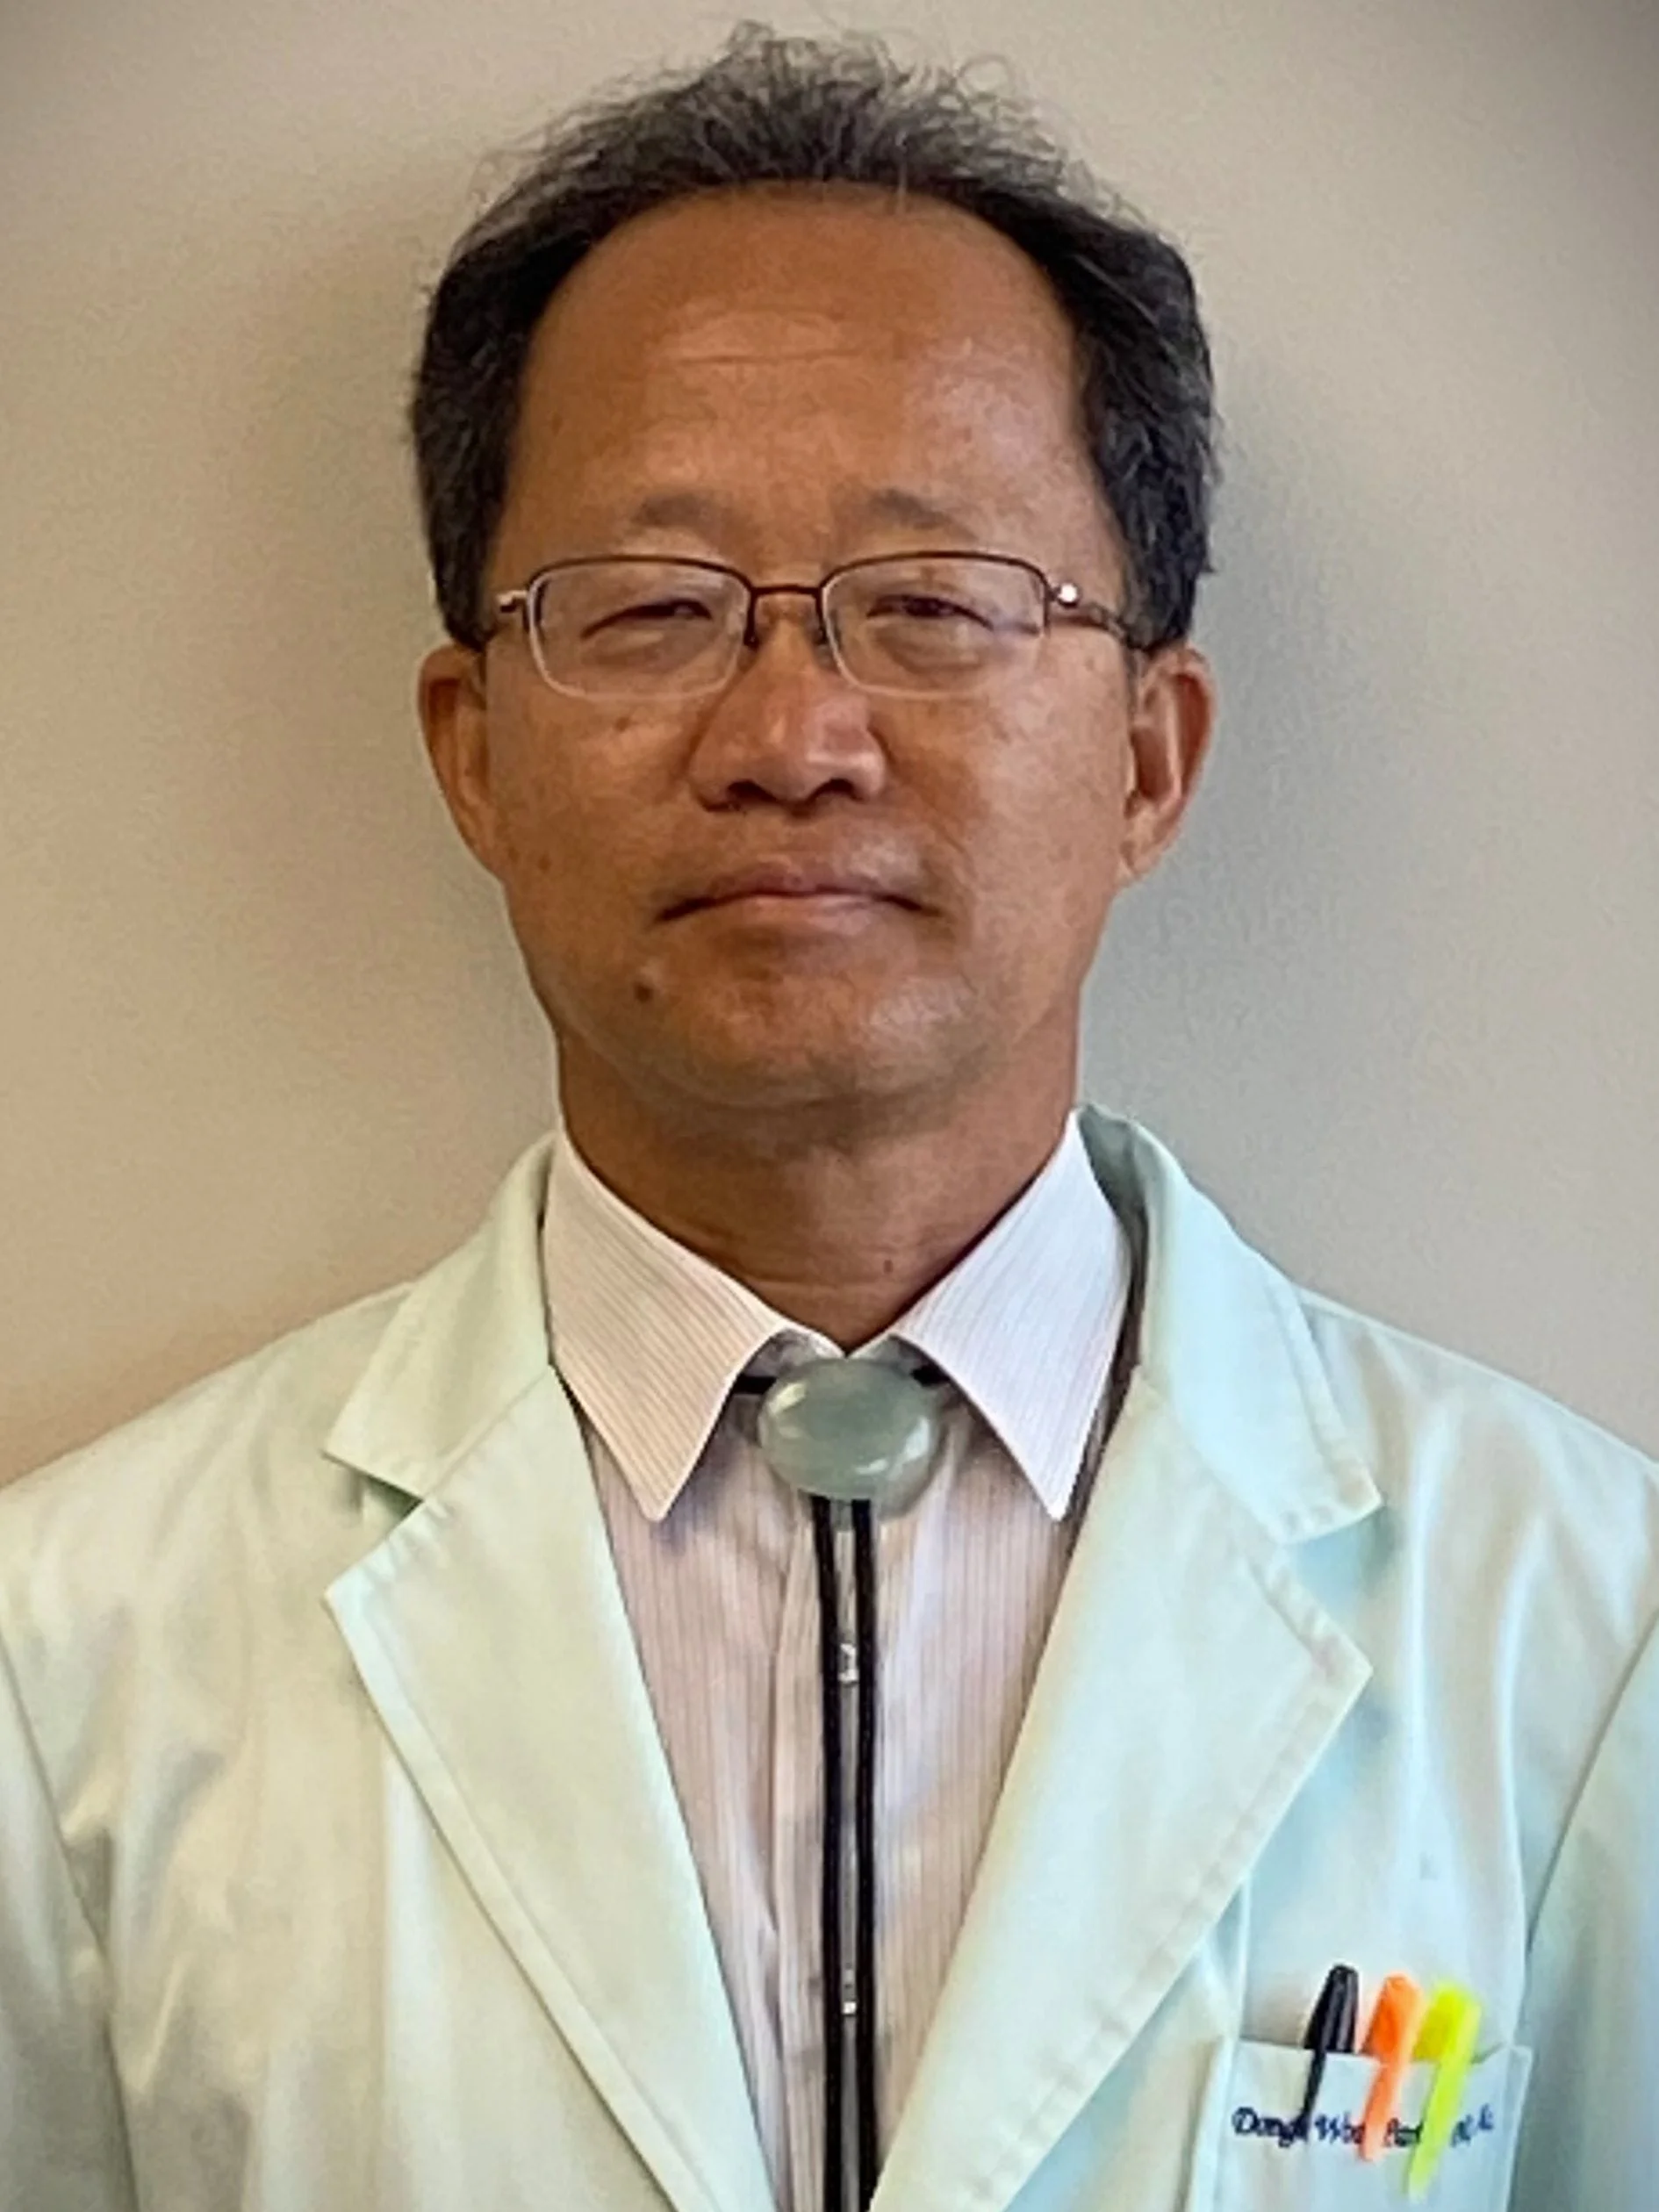 Dr. Dong Woo Park, LAc